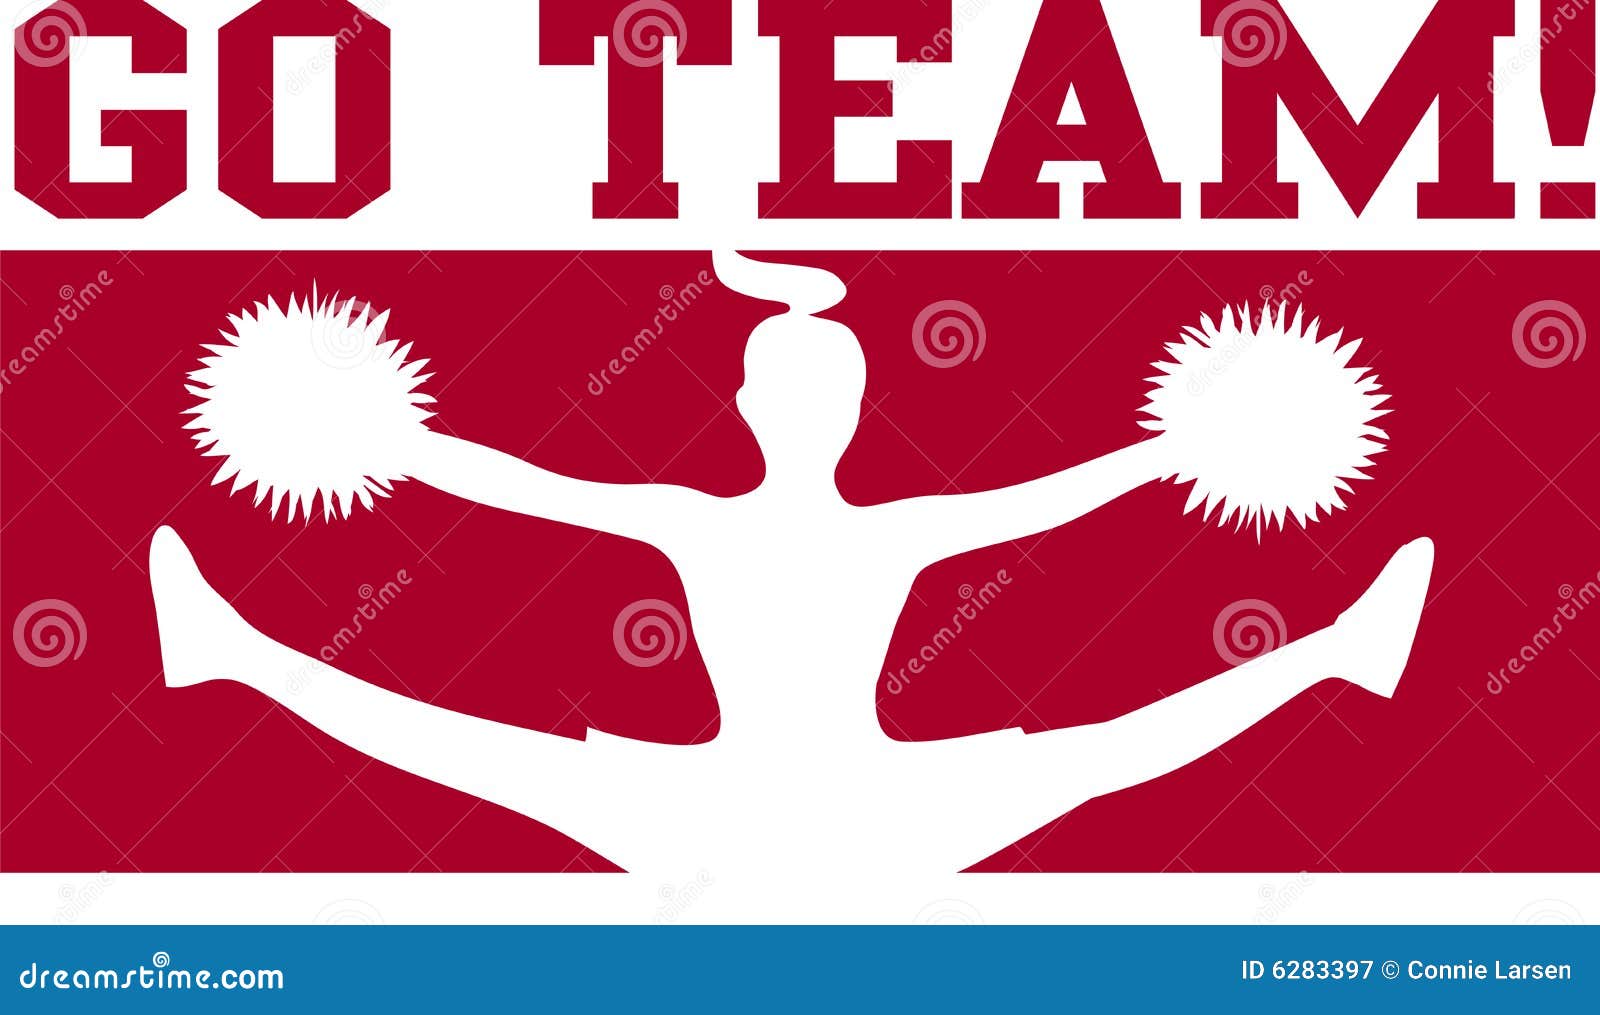 Cheerleader gehen Team-Kastanienbraun/ENV. Silhouettieren Sie Abbildung einer Sportteamcheerleader in dunkelrotem